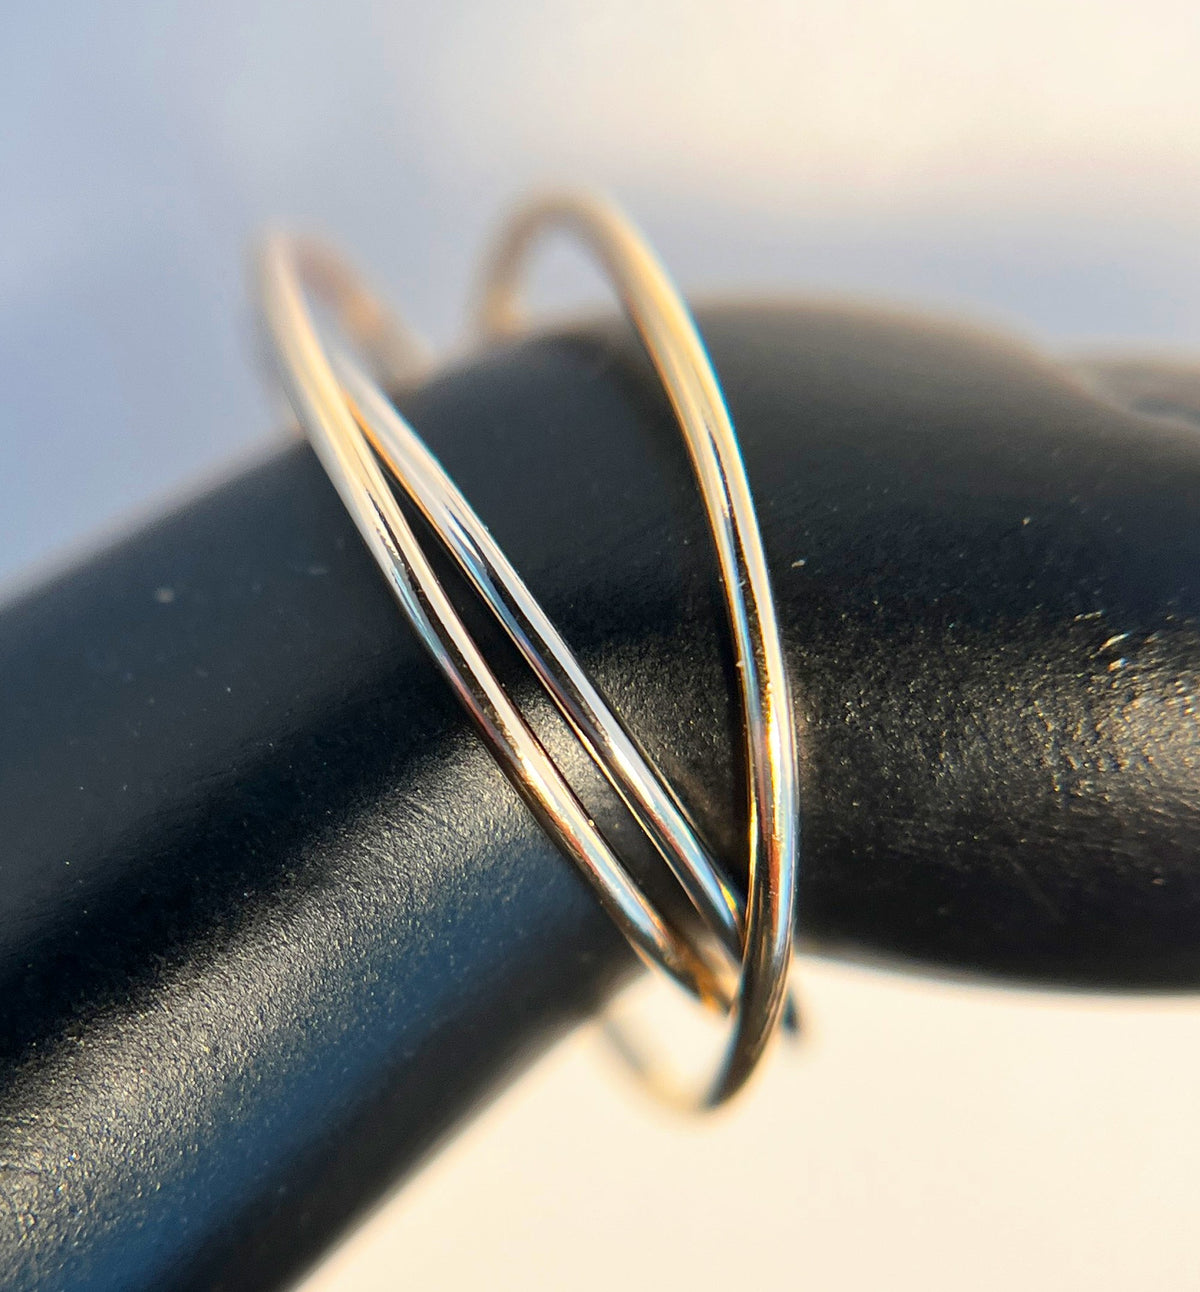 Three Strand Interlock Fidget Ring Gold Fill